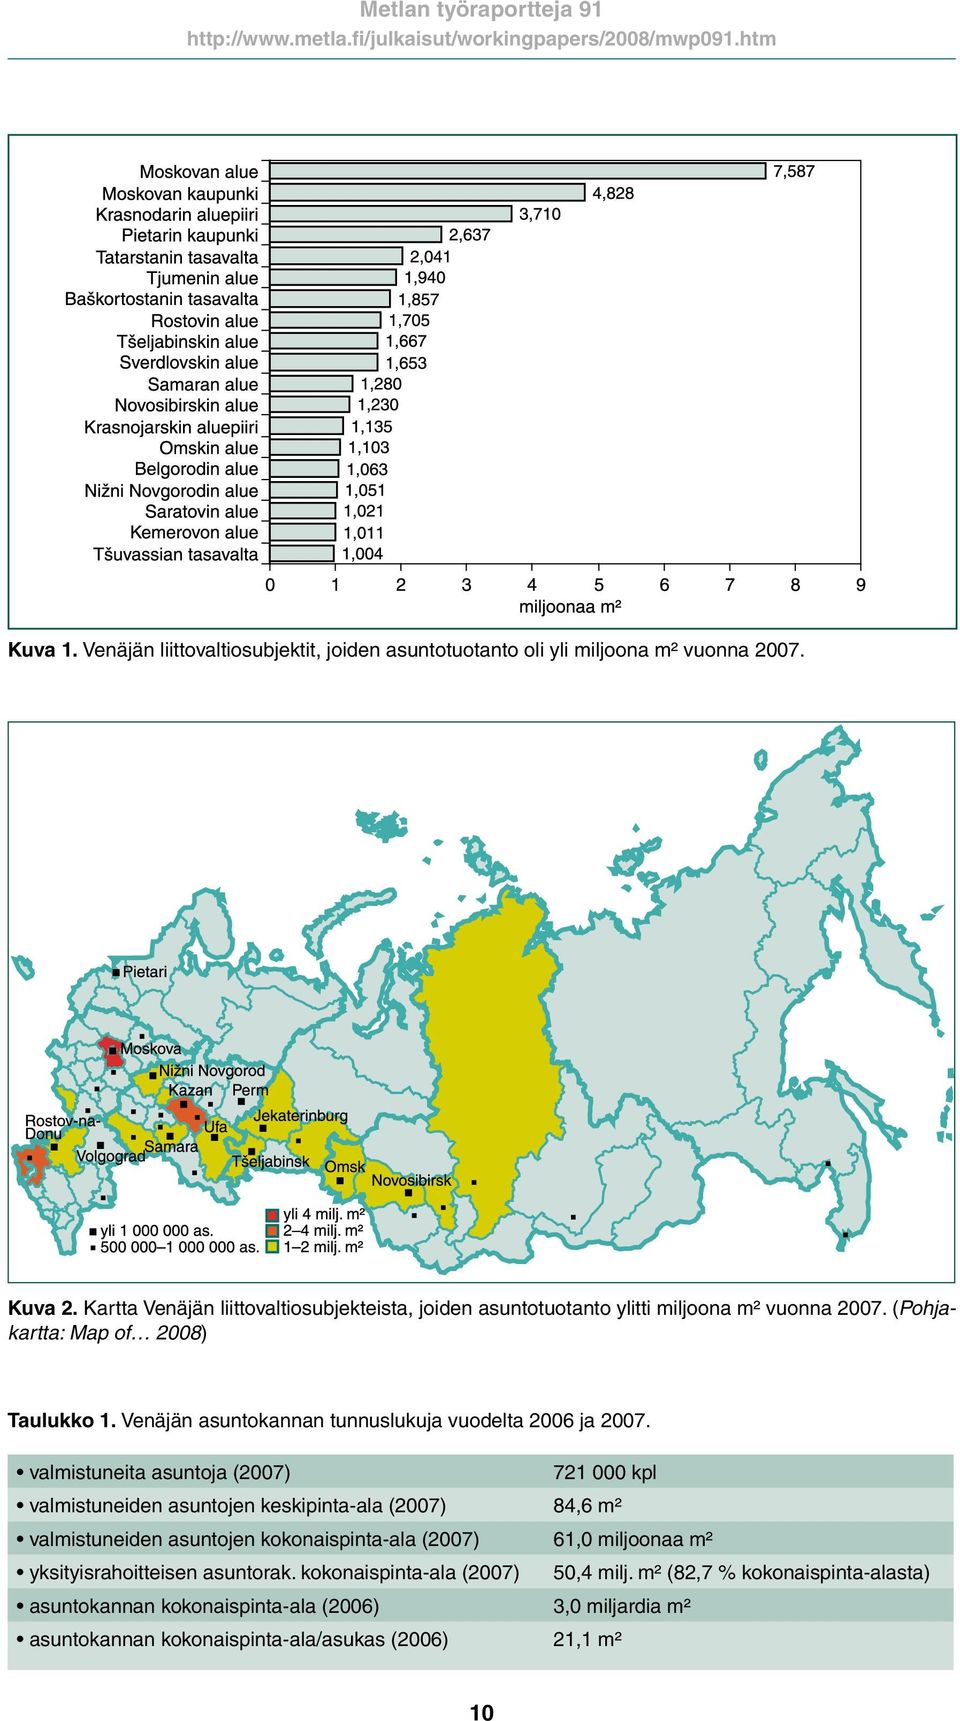 Venäjän asuntokannan tunnuslukuja vuodelta 2006 ja 2007.